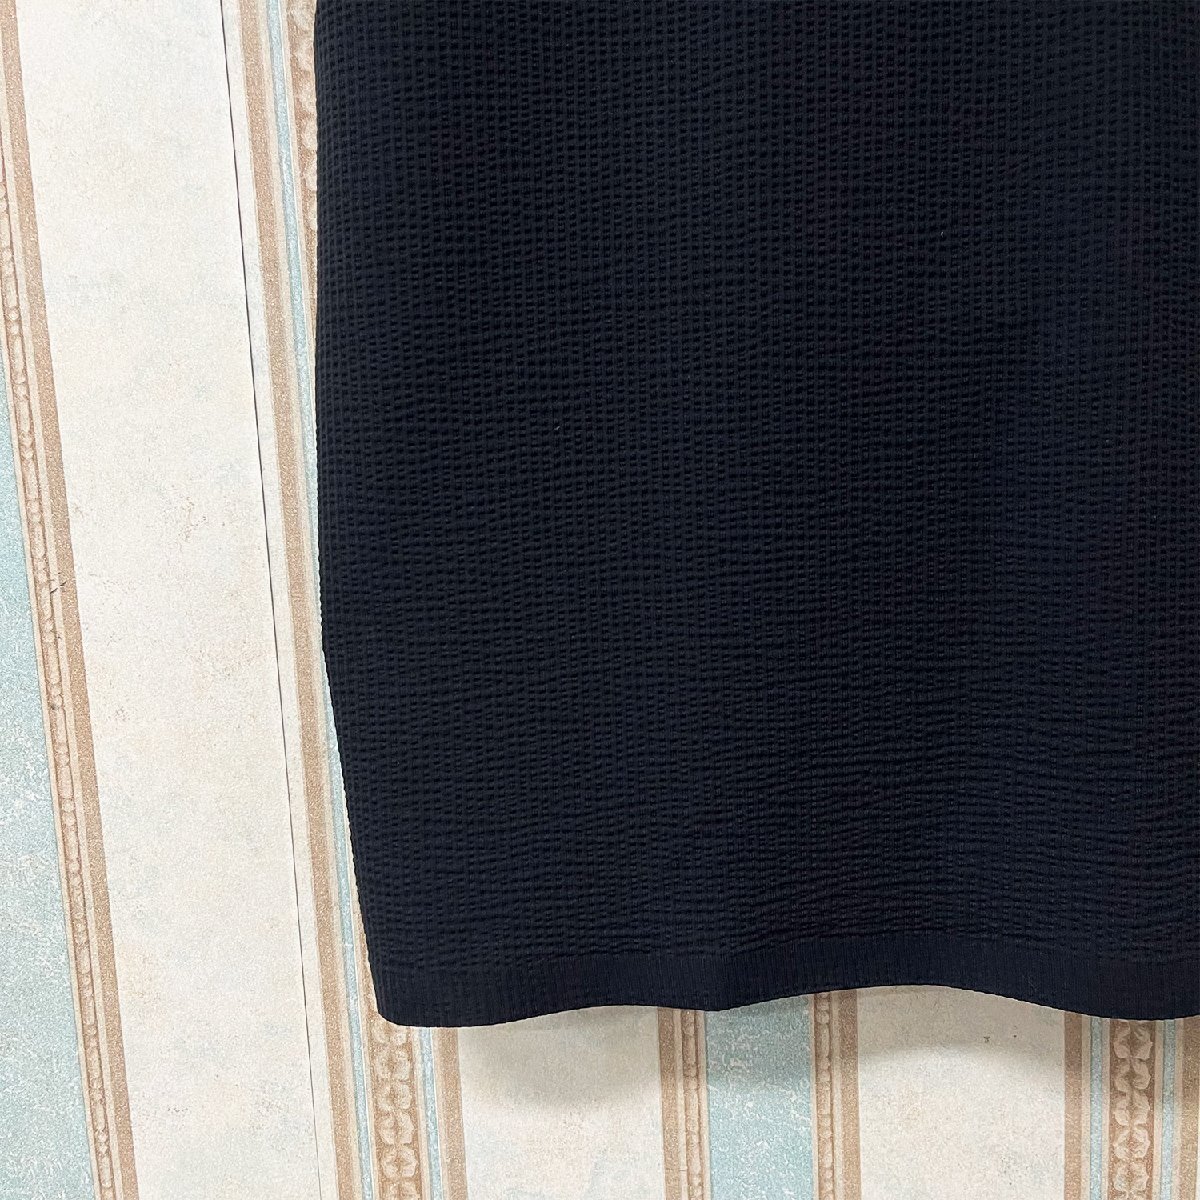 絶賛 定価3万 FRANKLIN MUSK・アメリカ・ニューヨーク発 ポロシャツ 高品質シルク/コットン混 薄手 速乾 涼しい 洗練 ビジネス サイズ2の画像5